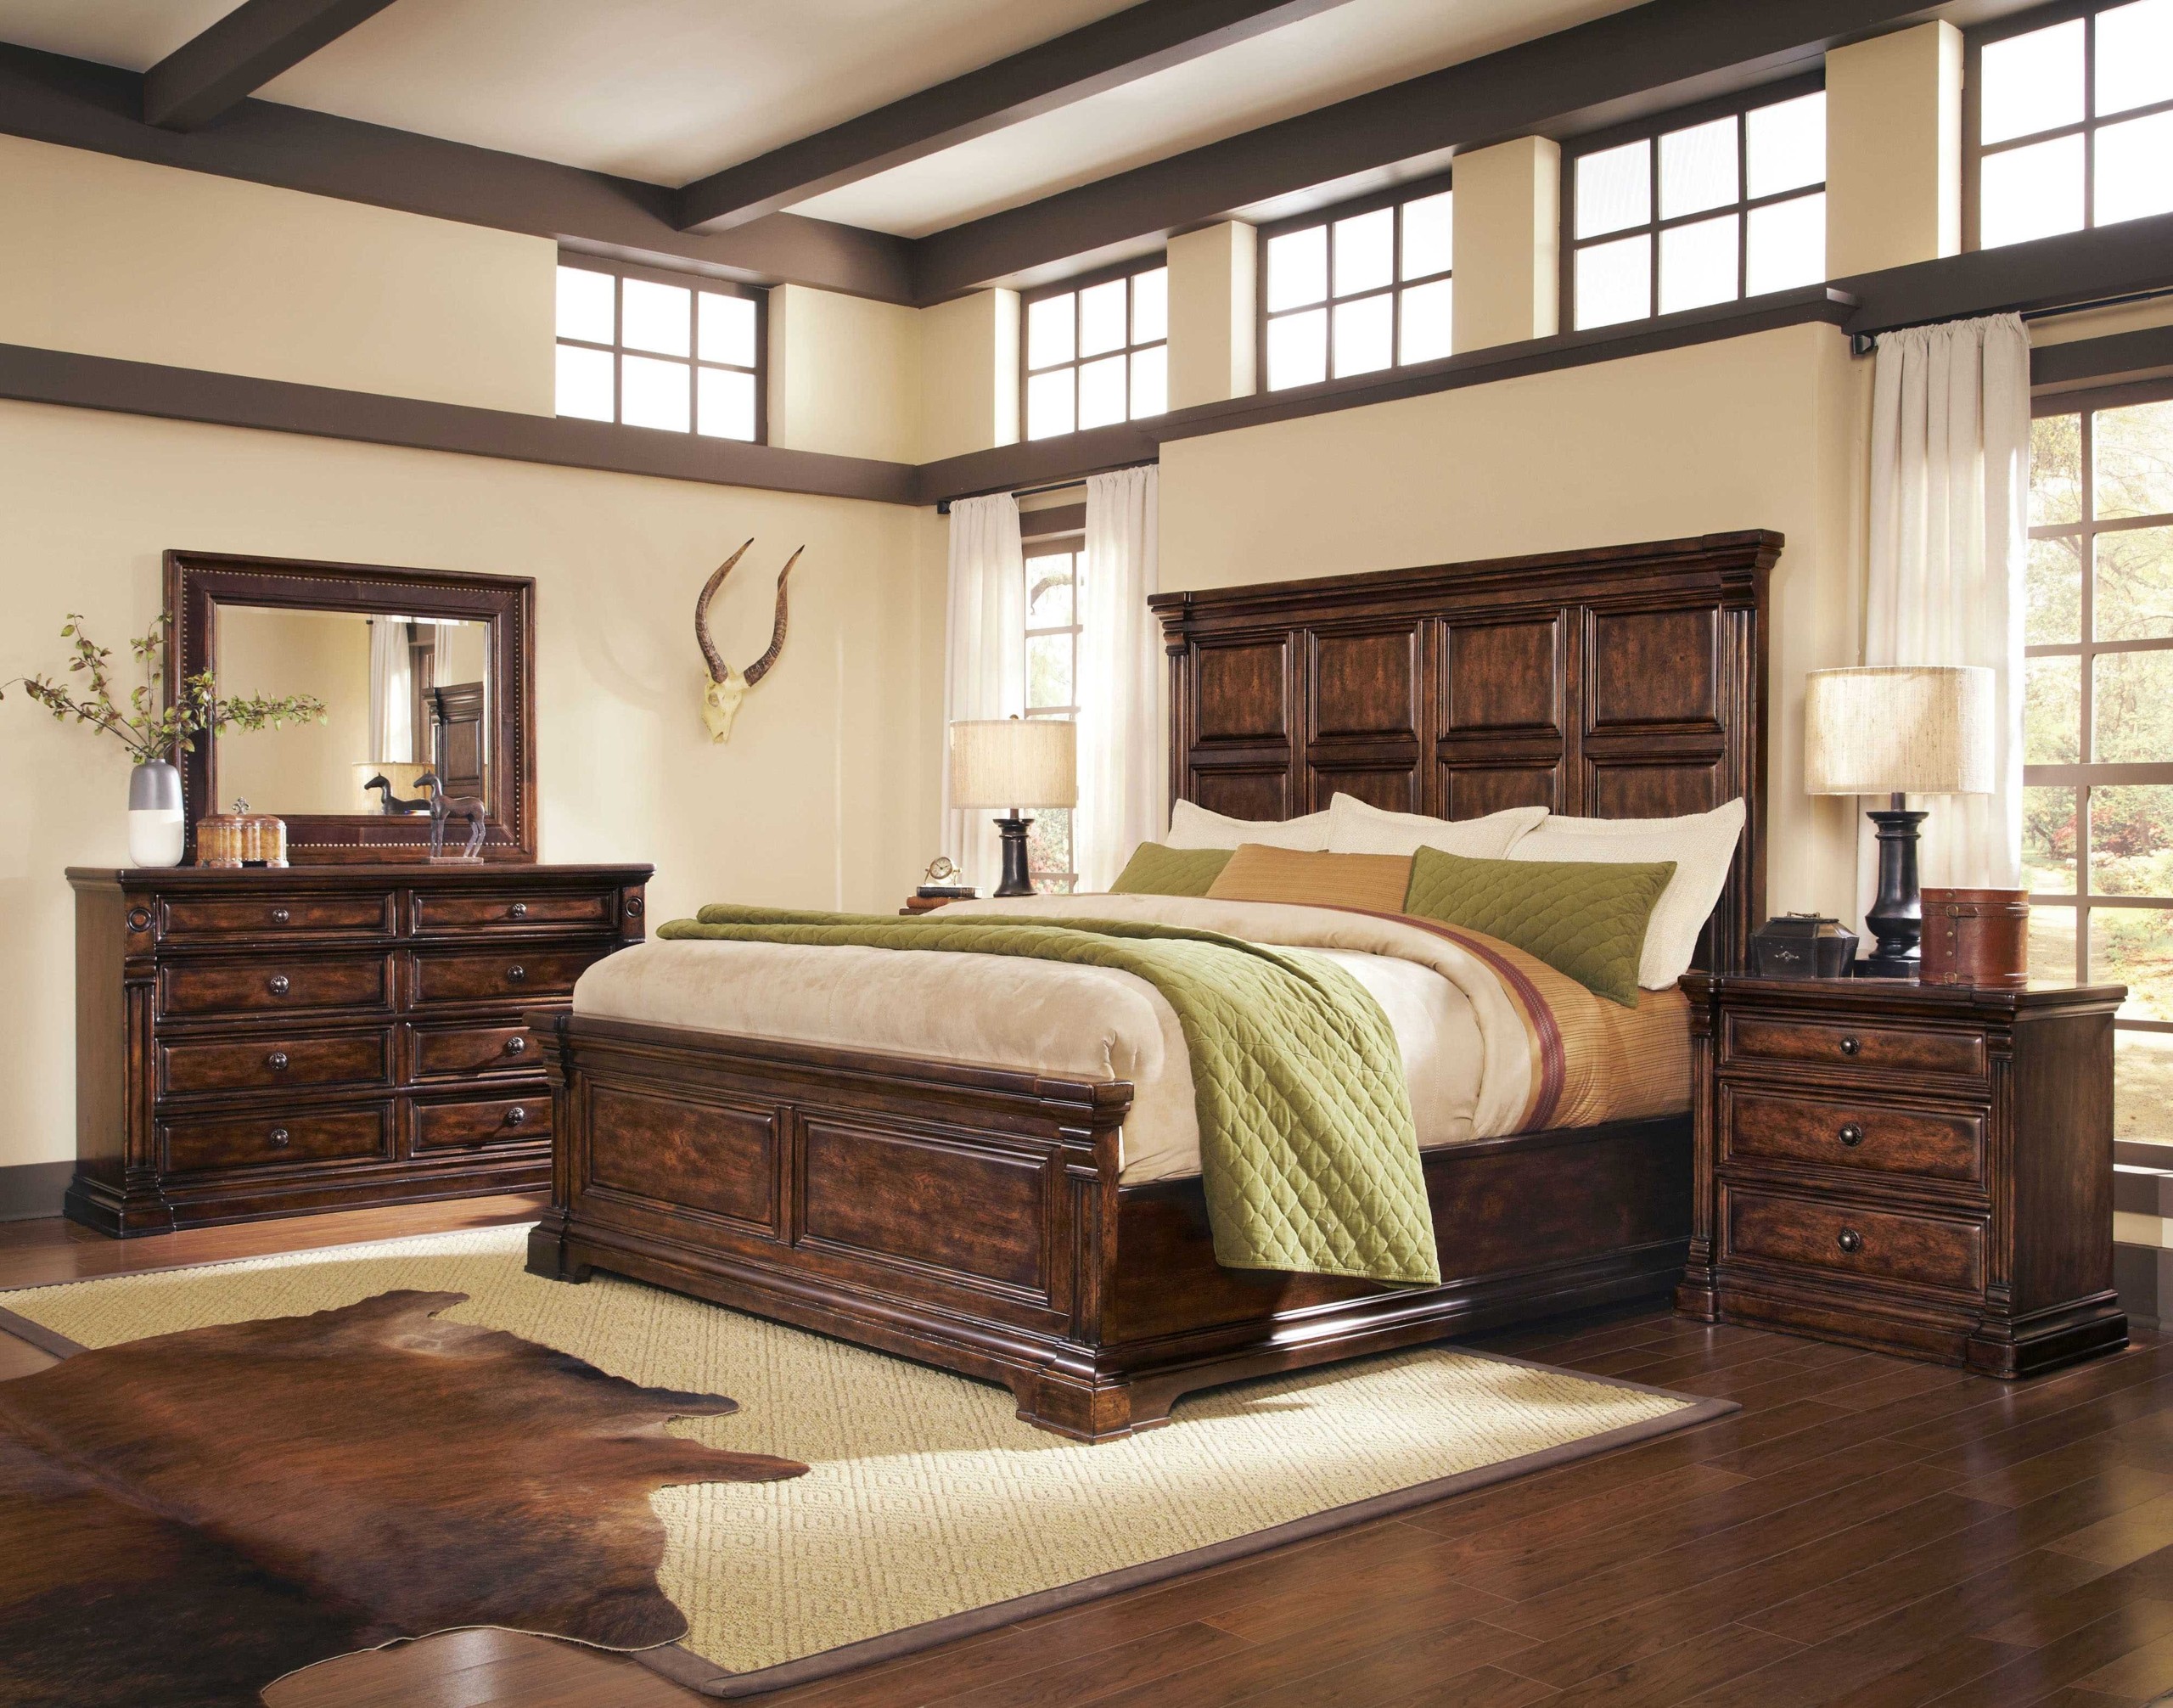 Oak bedroom furniture sets 20